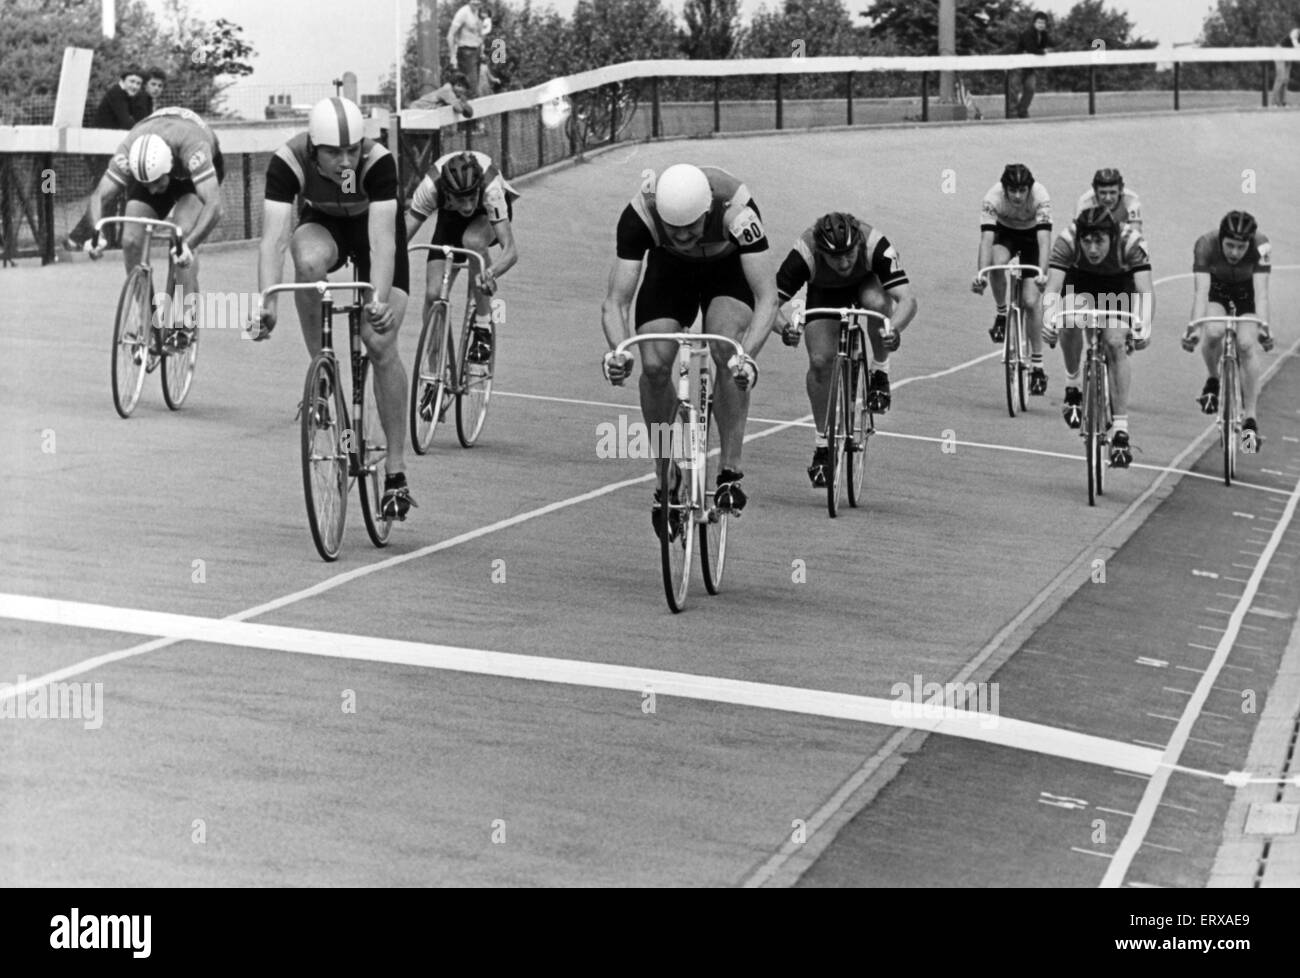 Ciclo Racing a Clairville Stadium, Middlesbrough. Il 25 luglio 1981. Brad Thurrell (centro, n. 80), vince il Belmont aprire 500m Handicap finale nella parte anteriore del secondo posto Piers Hewitt (sinistra con casco con striping) e (a destra) il terzo posto Mark Barry (no.75). Foto Stock